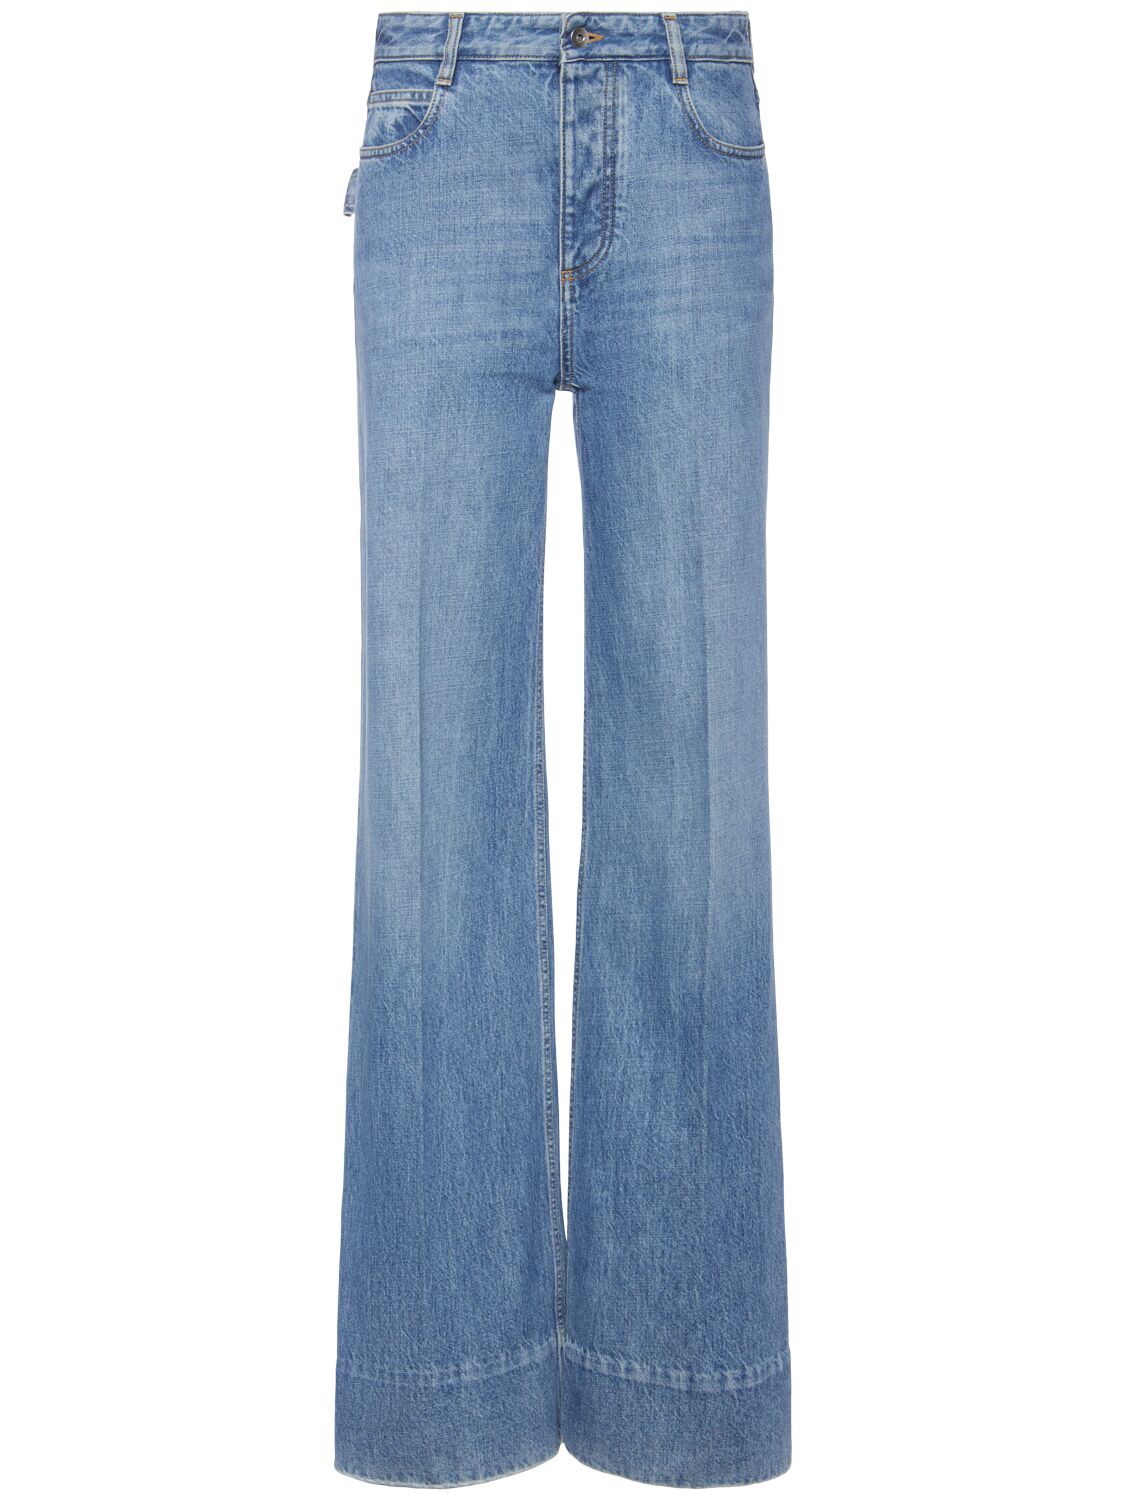 Image of Vintage Indigo Wide Leg Denim Jeans